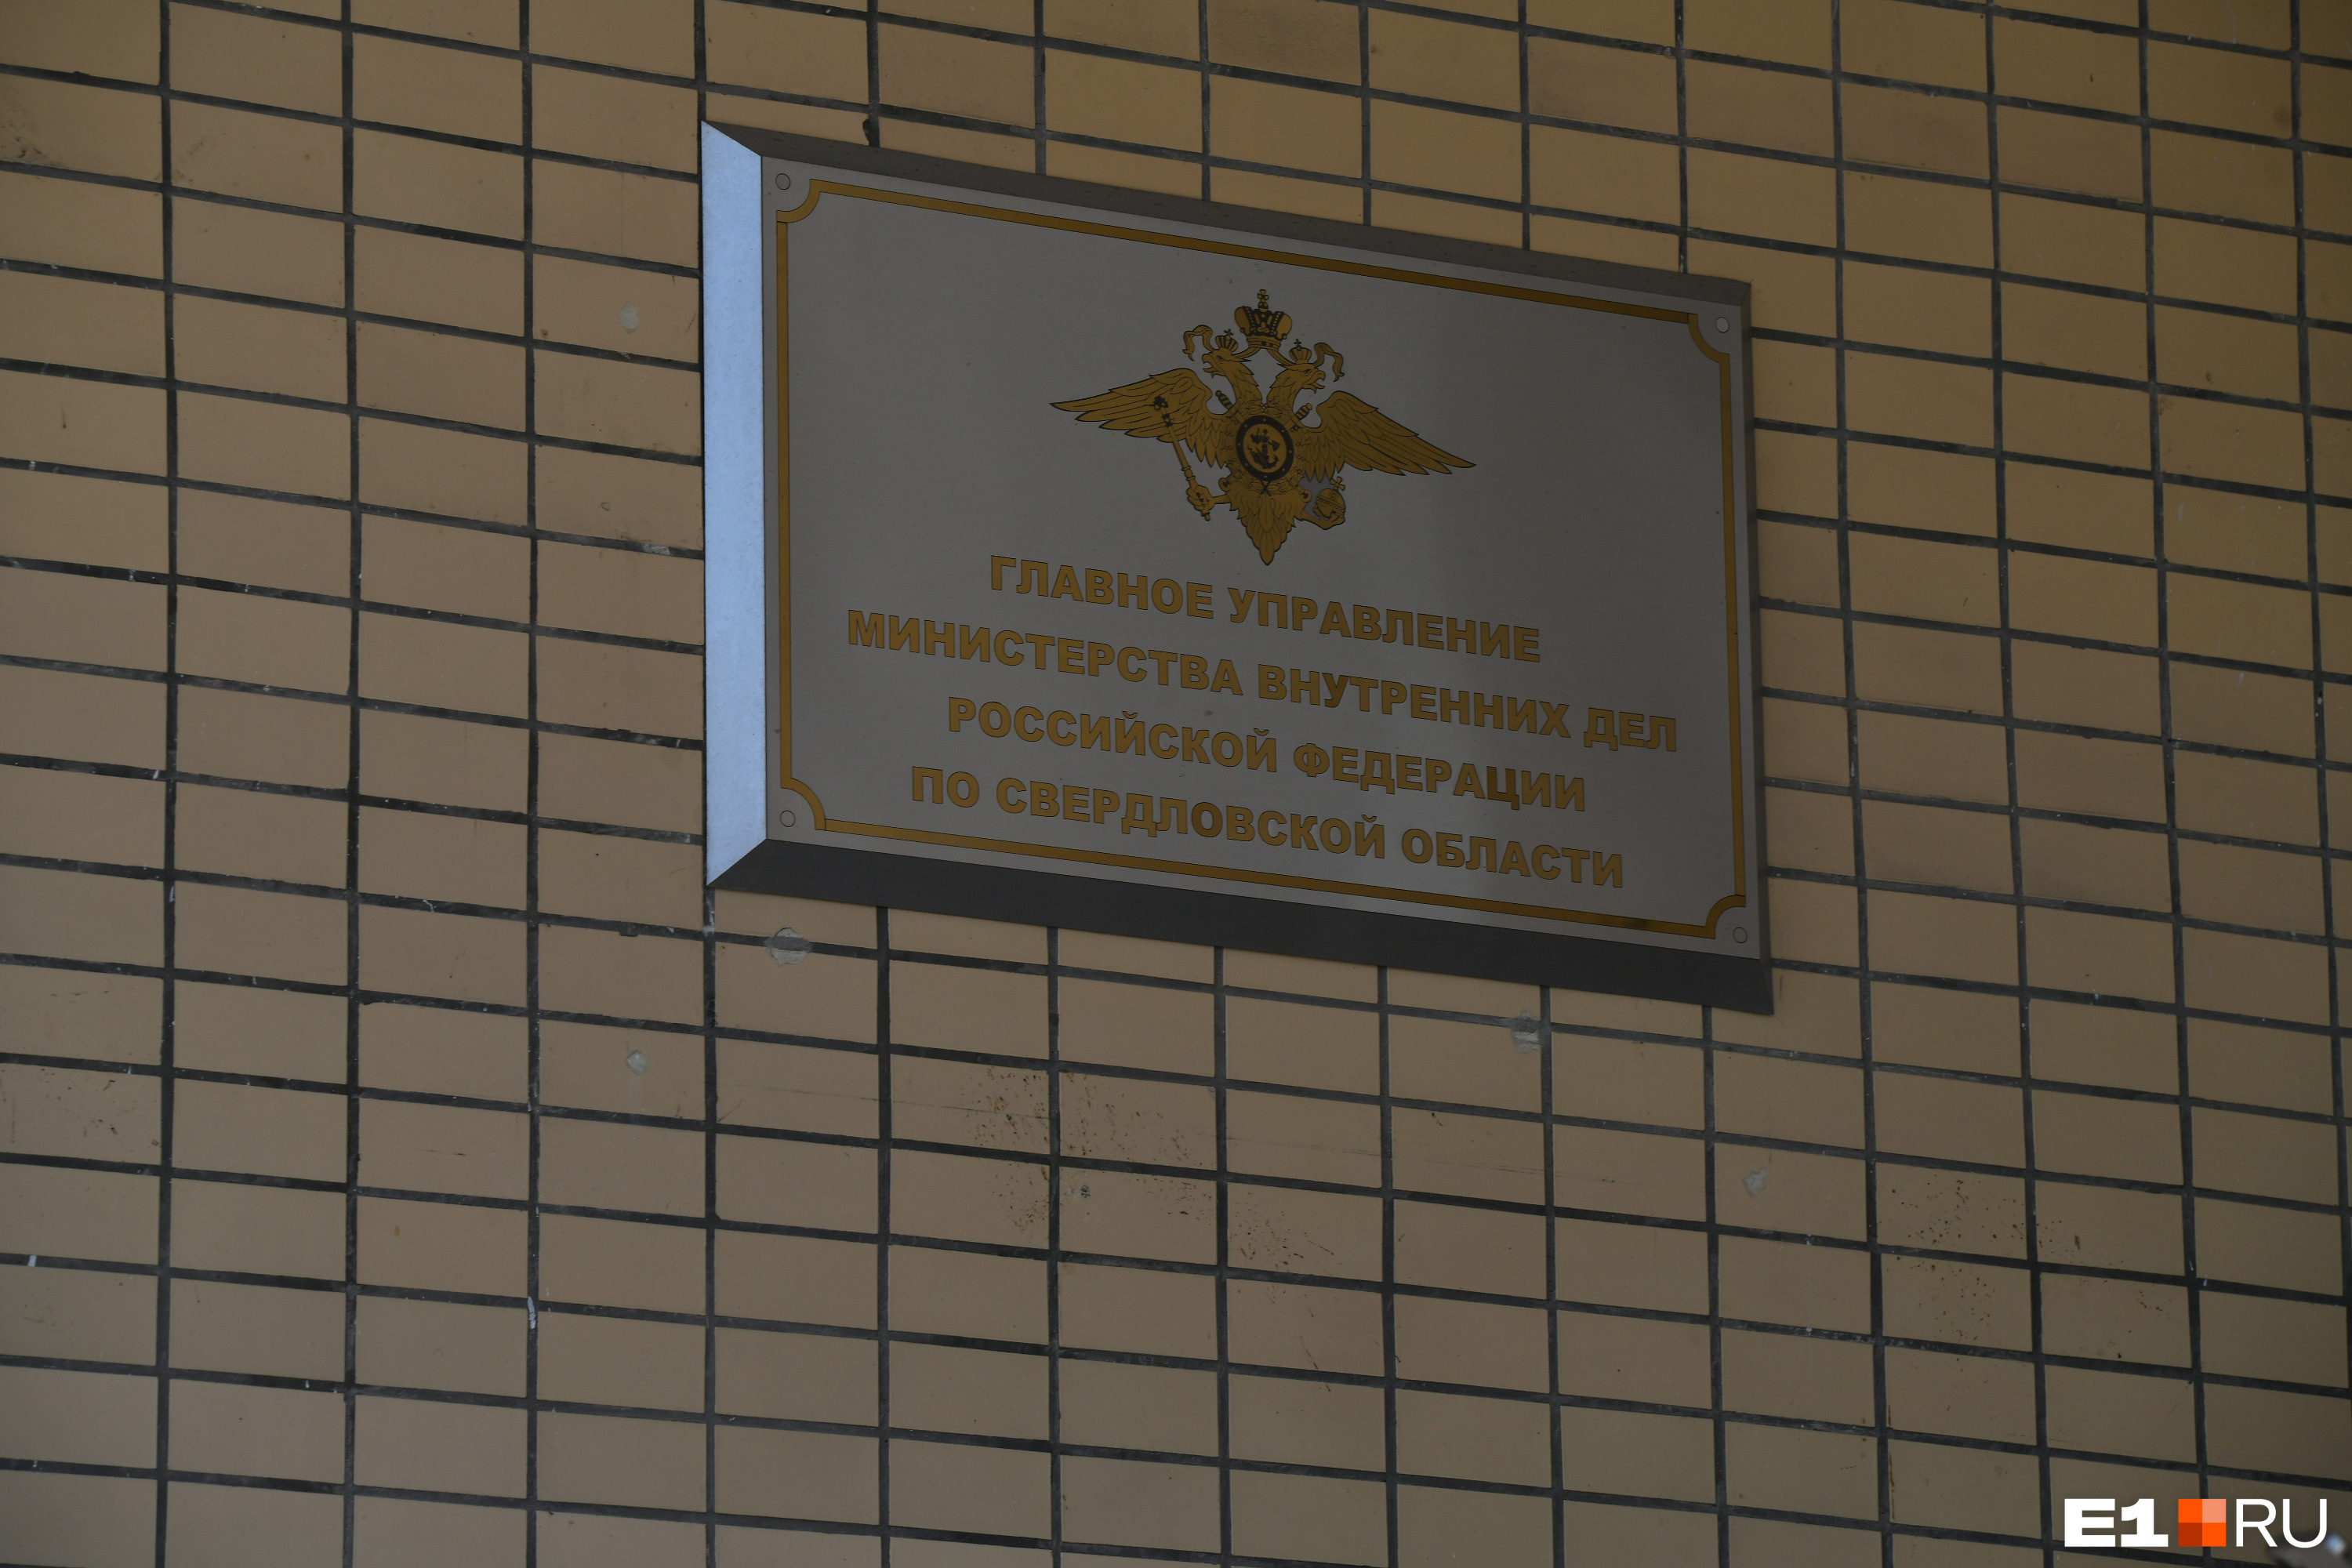 В Екатеринбурге полицию переименовали в «Управление по борьбе со здравым смыслом». При чем тут порно?